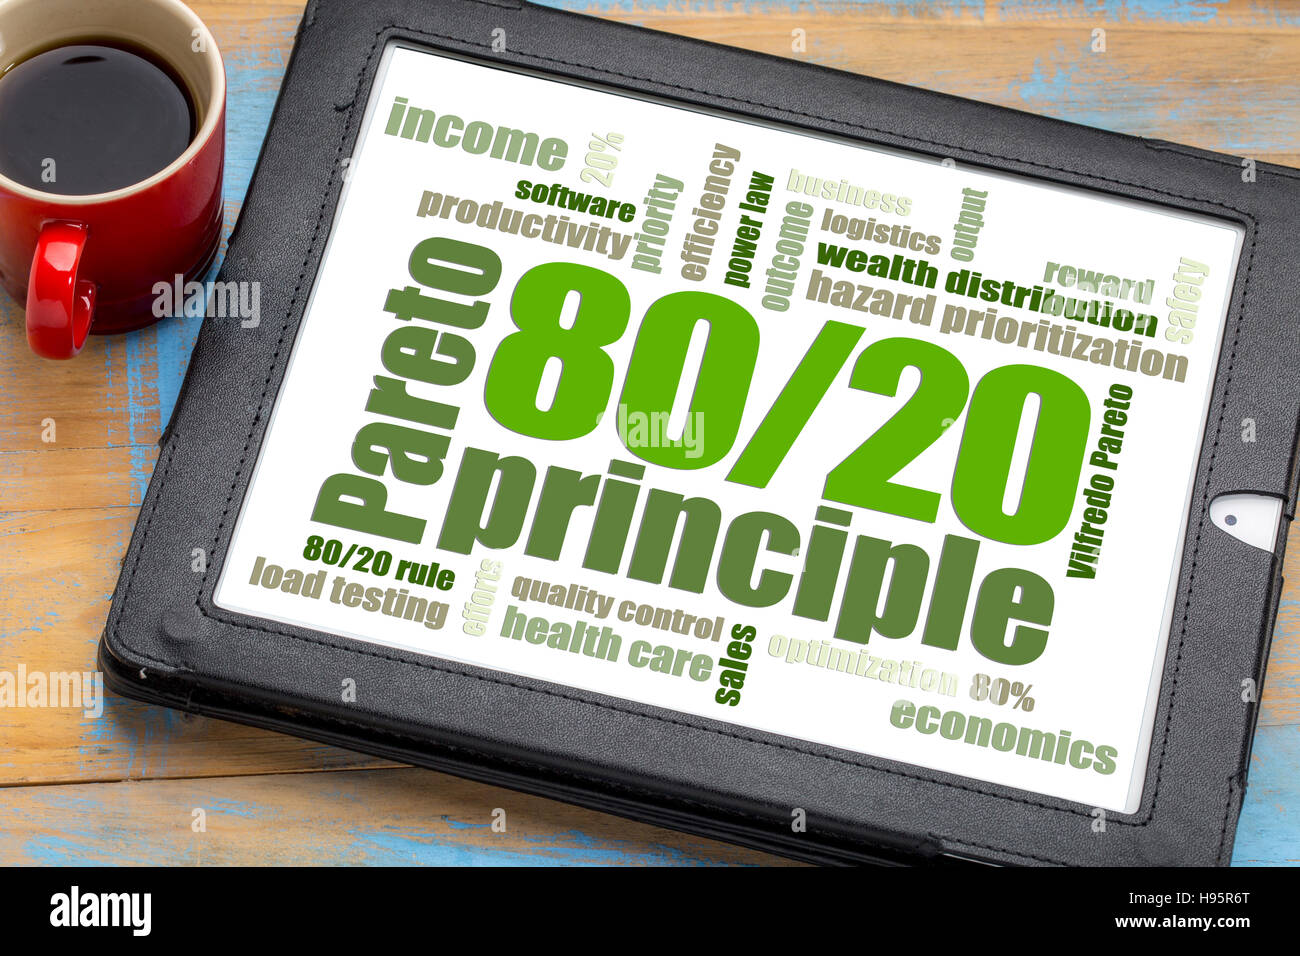 Principio de Pareto o regla 20 81 - la palabra nube en una tableta digital con una taza de café Foto de stock